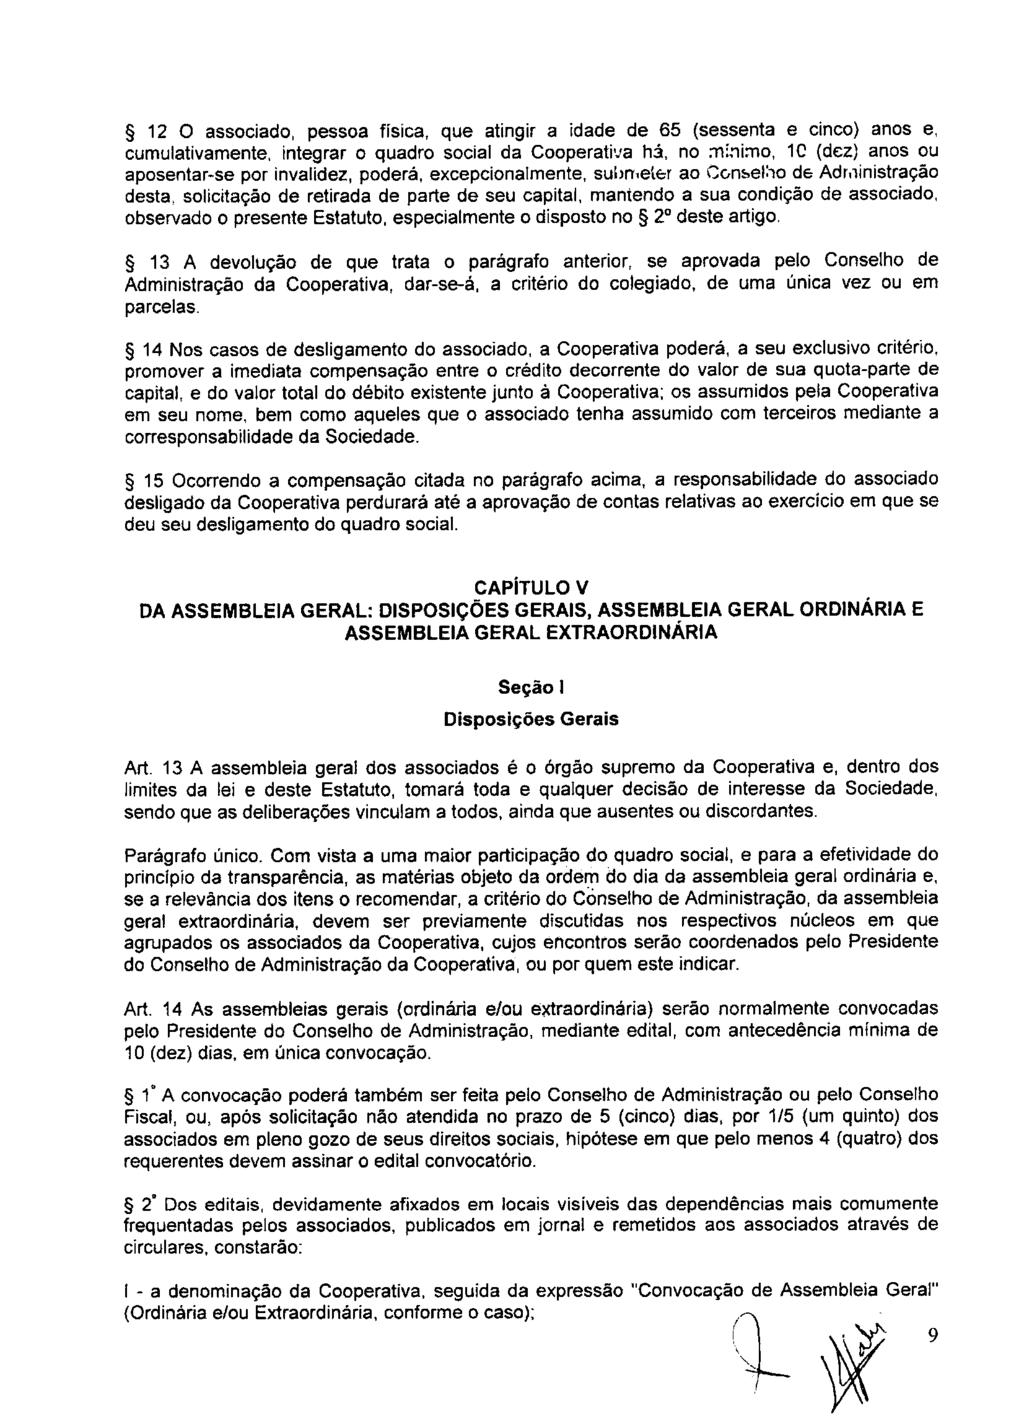 fls. 15 Este documento é cópia do original, assinado digitalmente por ANA ROSA MARQUES CROCE e Tribunal de Justica Sao Paulo, protocolado em 10/02/2016 às 15:37, sob o número